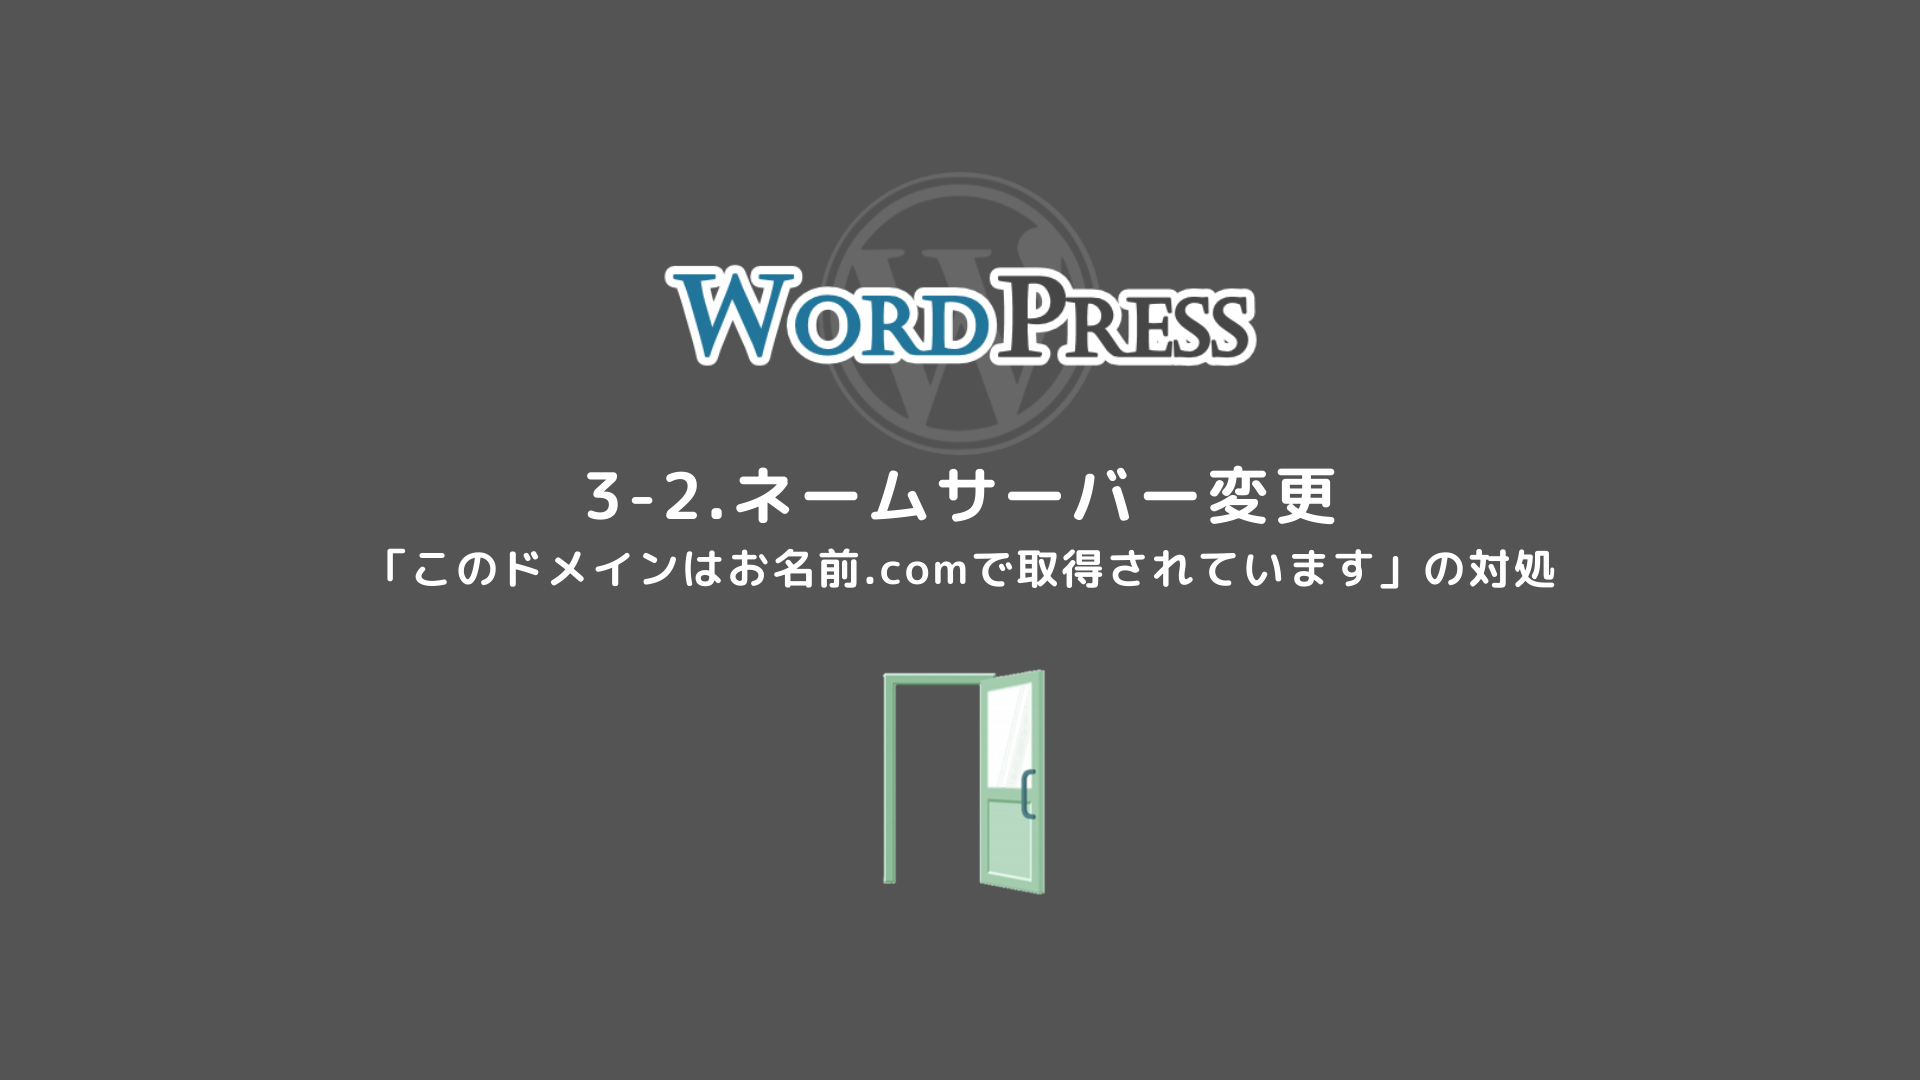 3-2.【ネームサーバー変更】初めてのWordPress 導入編 お名前.com